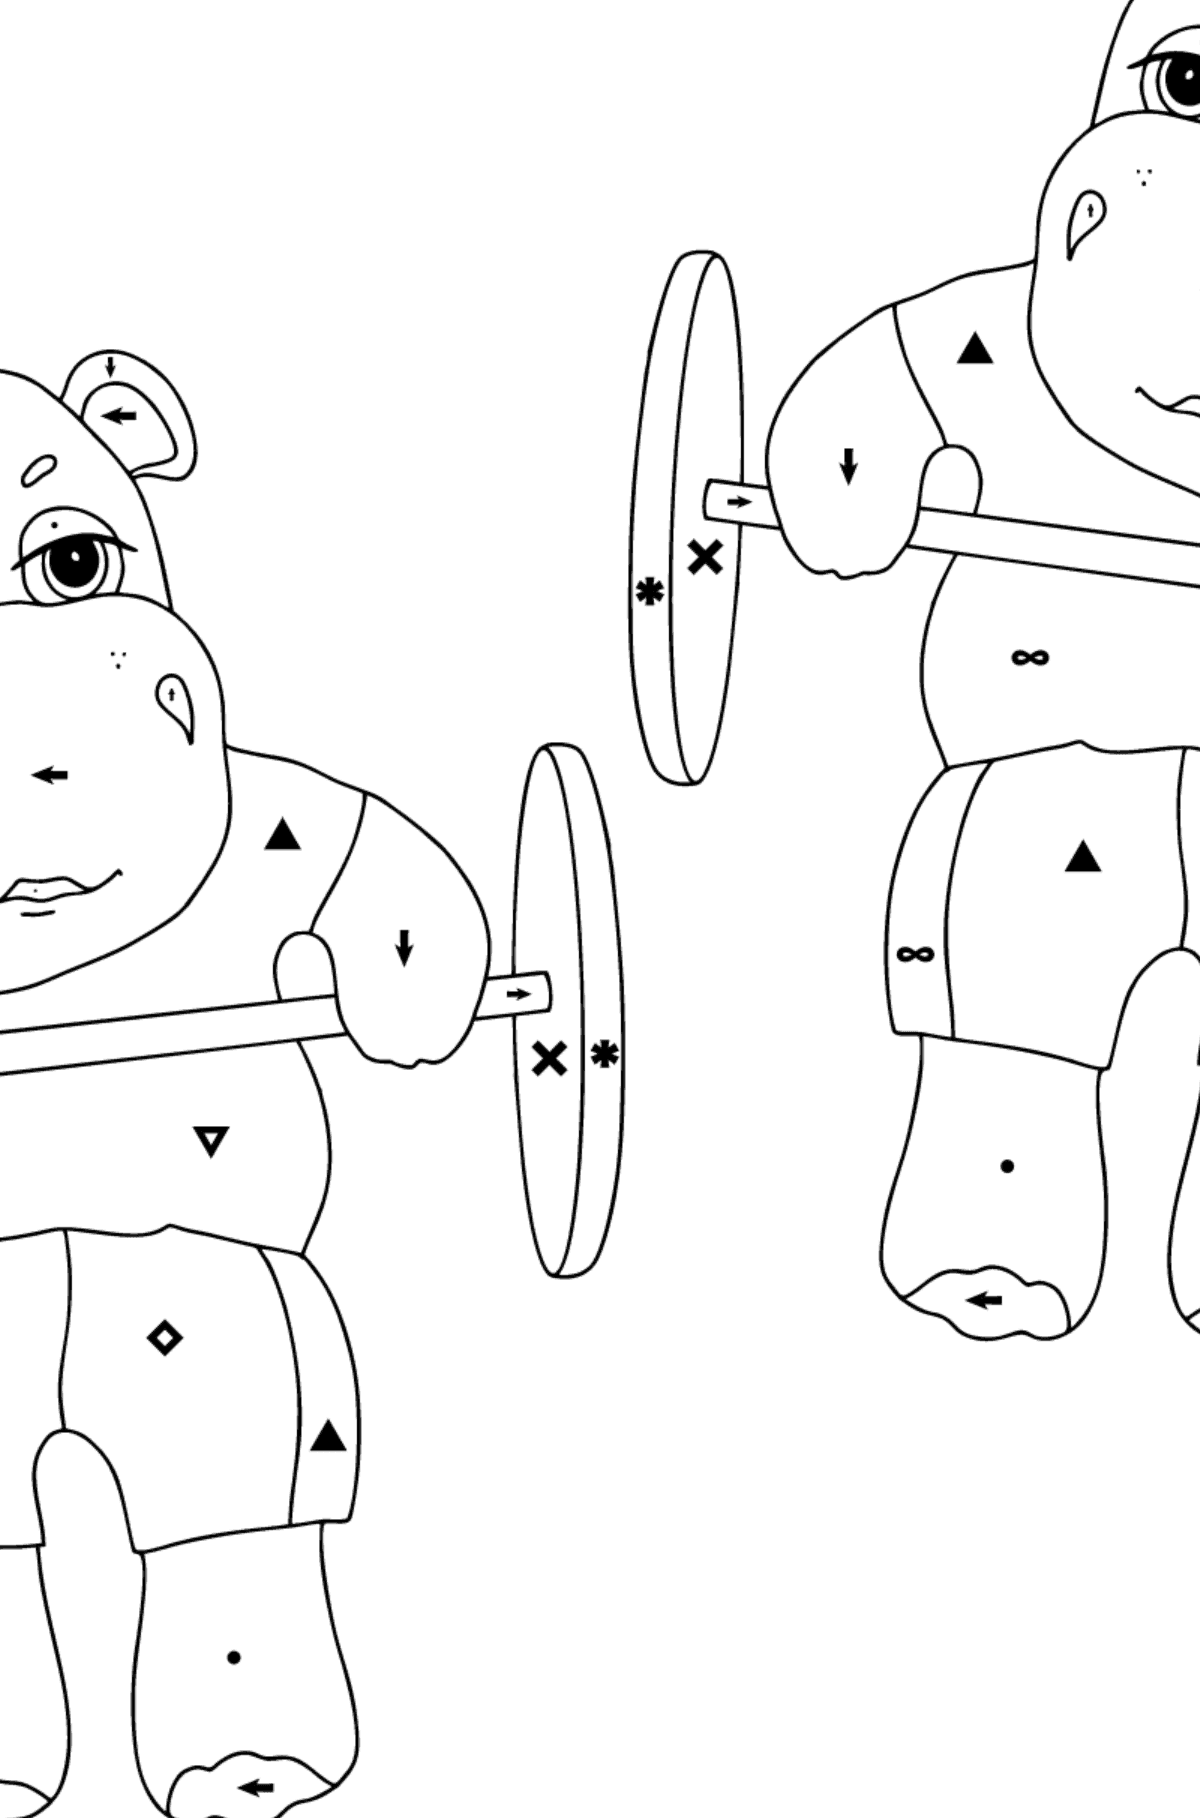 Prosta kolorystyka Hipopotamów - Kolorowanie według symboli dla dzieci